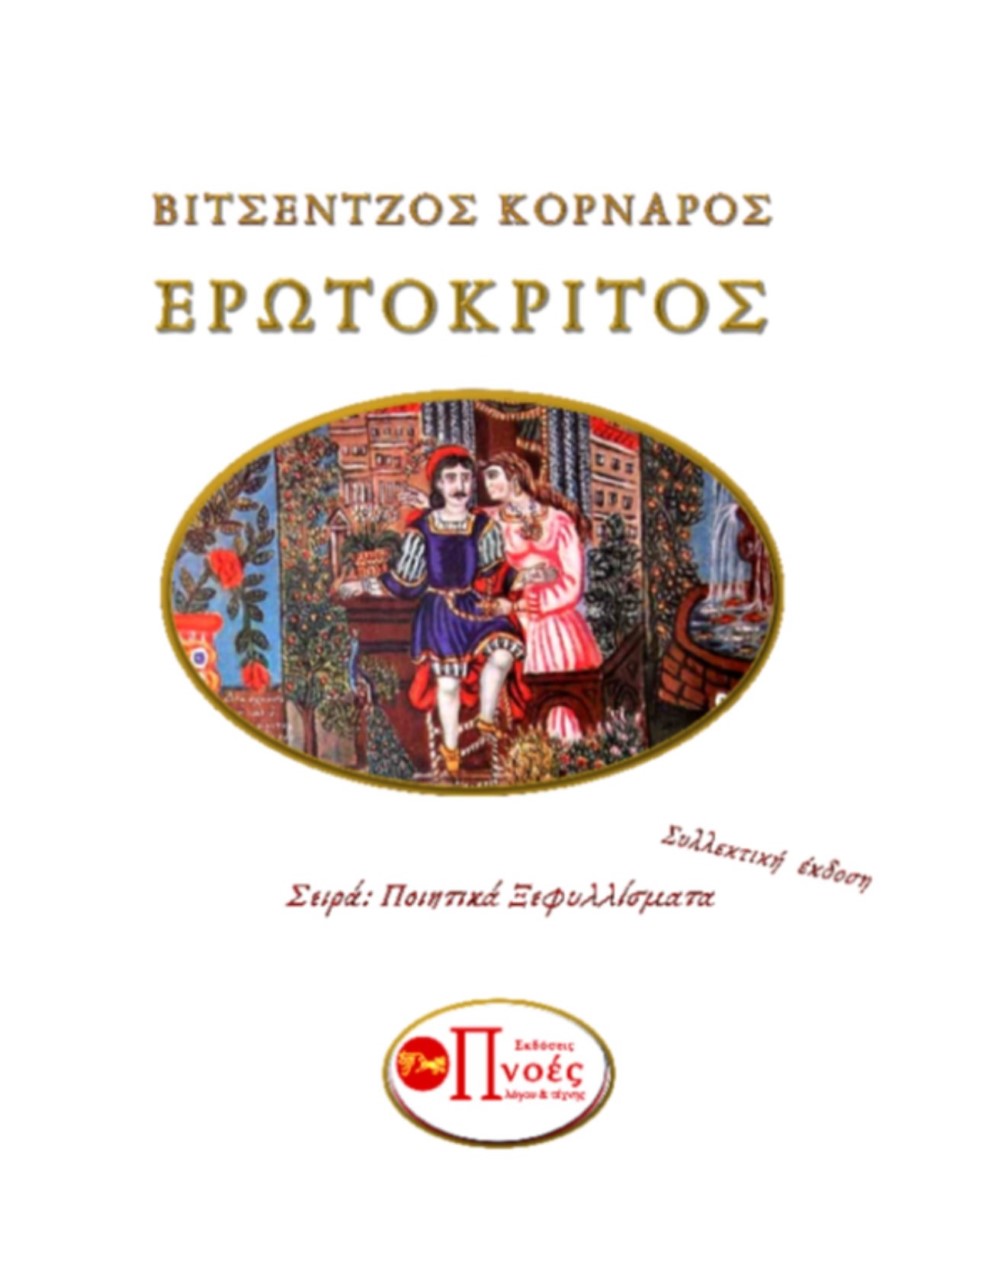 2019, Νίκος  Δεληγιάννης (), Ερωτόκριτος, , Κορνάρος, Βιτσέντζος, 1553-1613, Εκδόσεις Πνοές Λόγου και Τέχνης